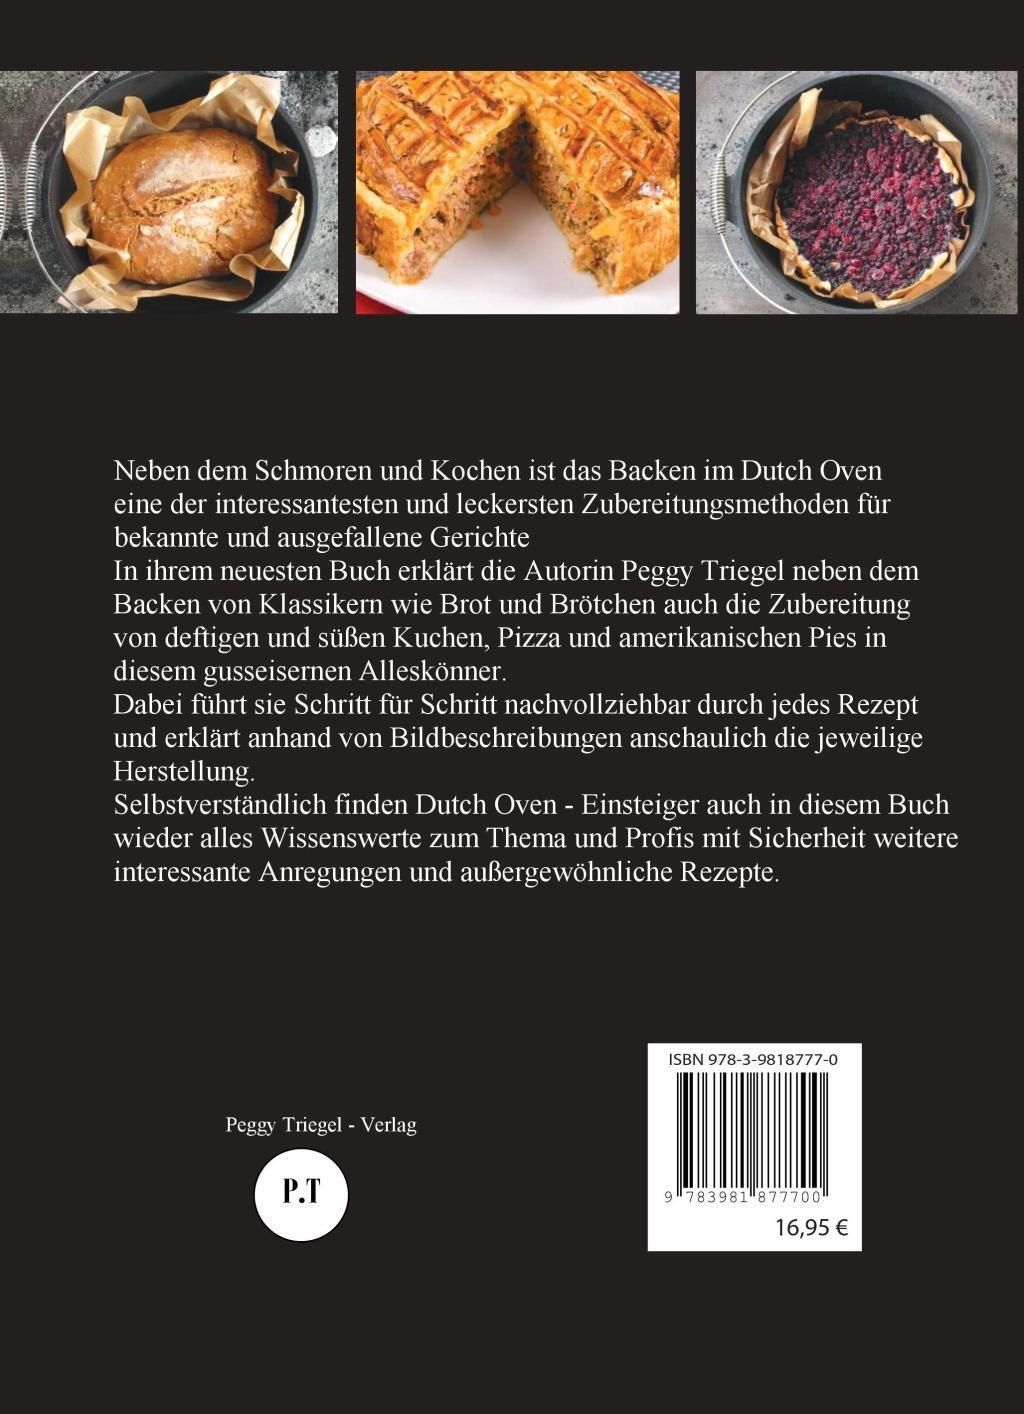 Bild: 9783981877700 | Dutch Oven Backbuch | ...von herzhaft - pikant bis süß | Peggy Triegel